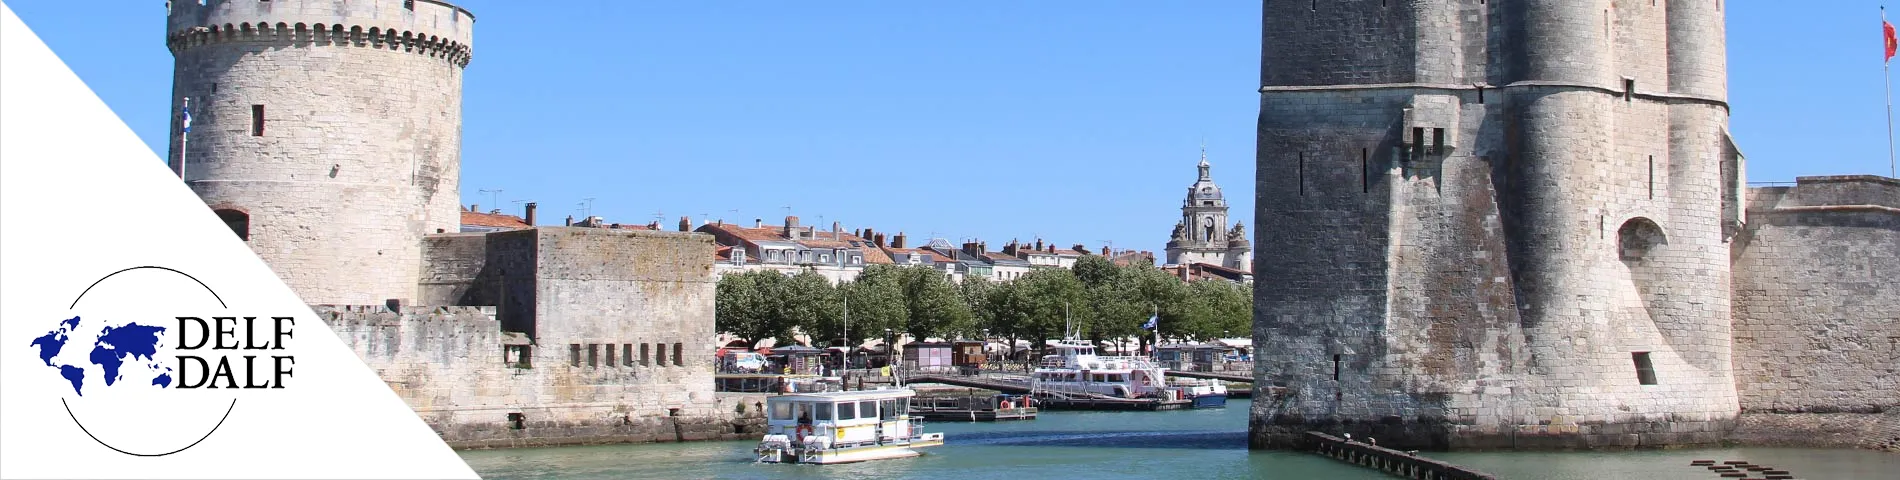 La Rochelle - DELF/DALF